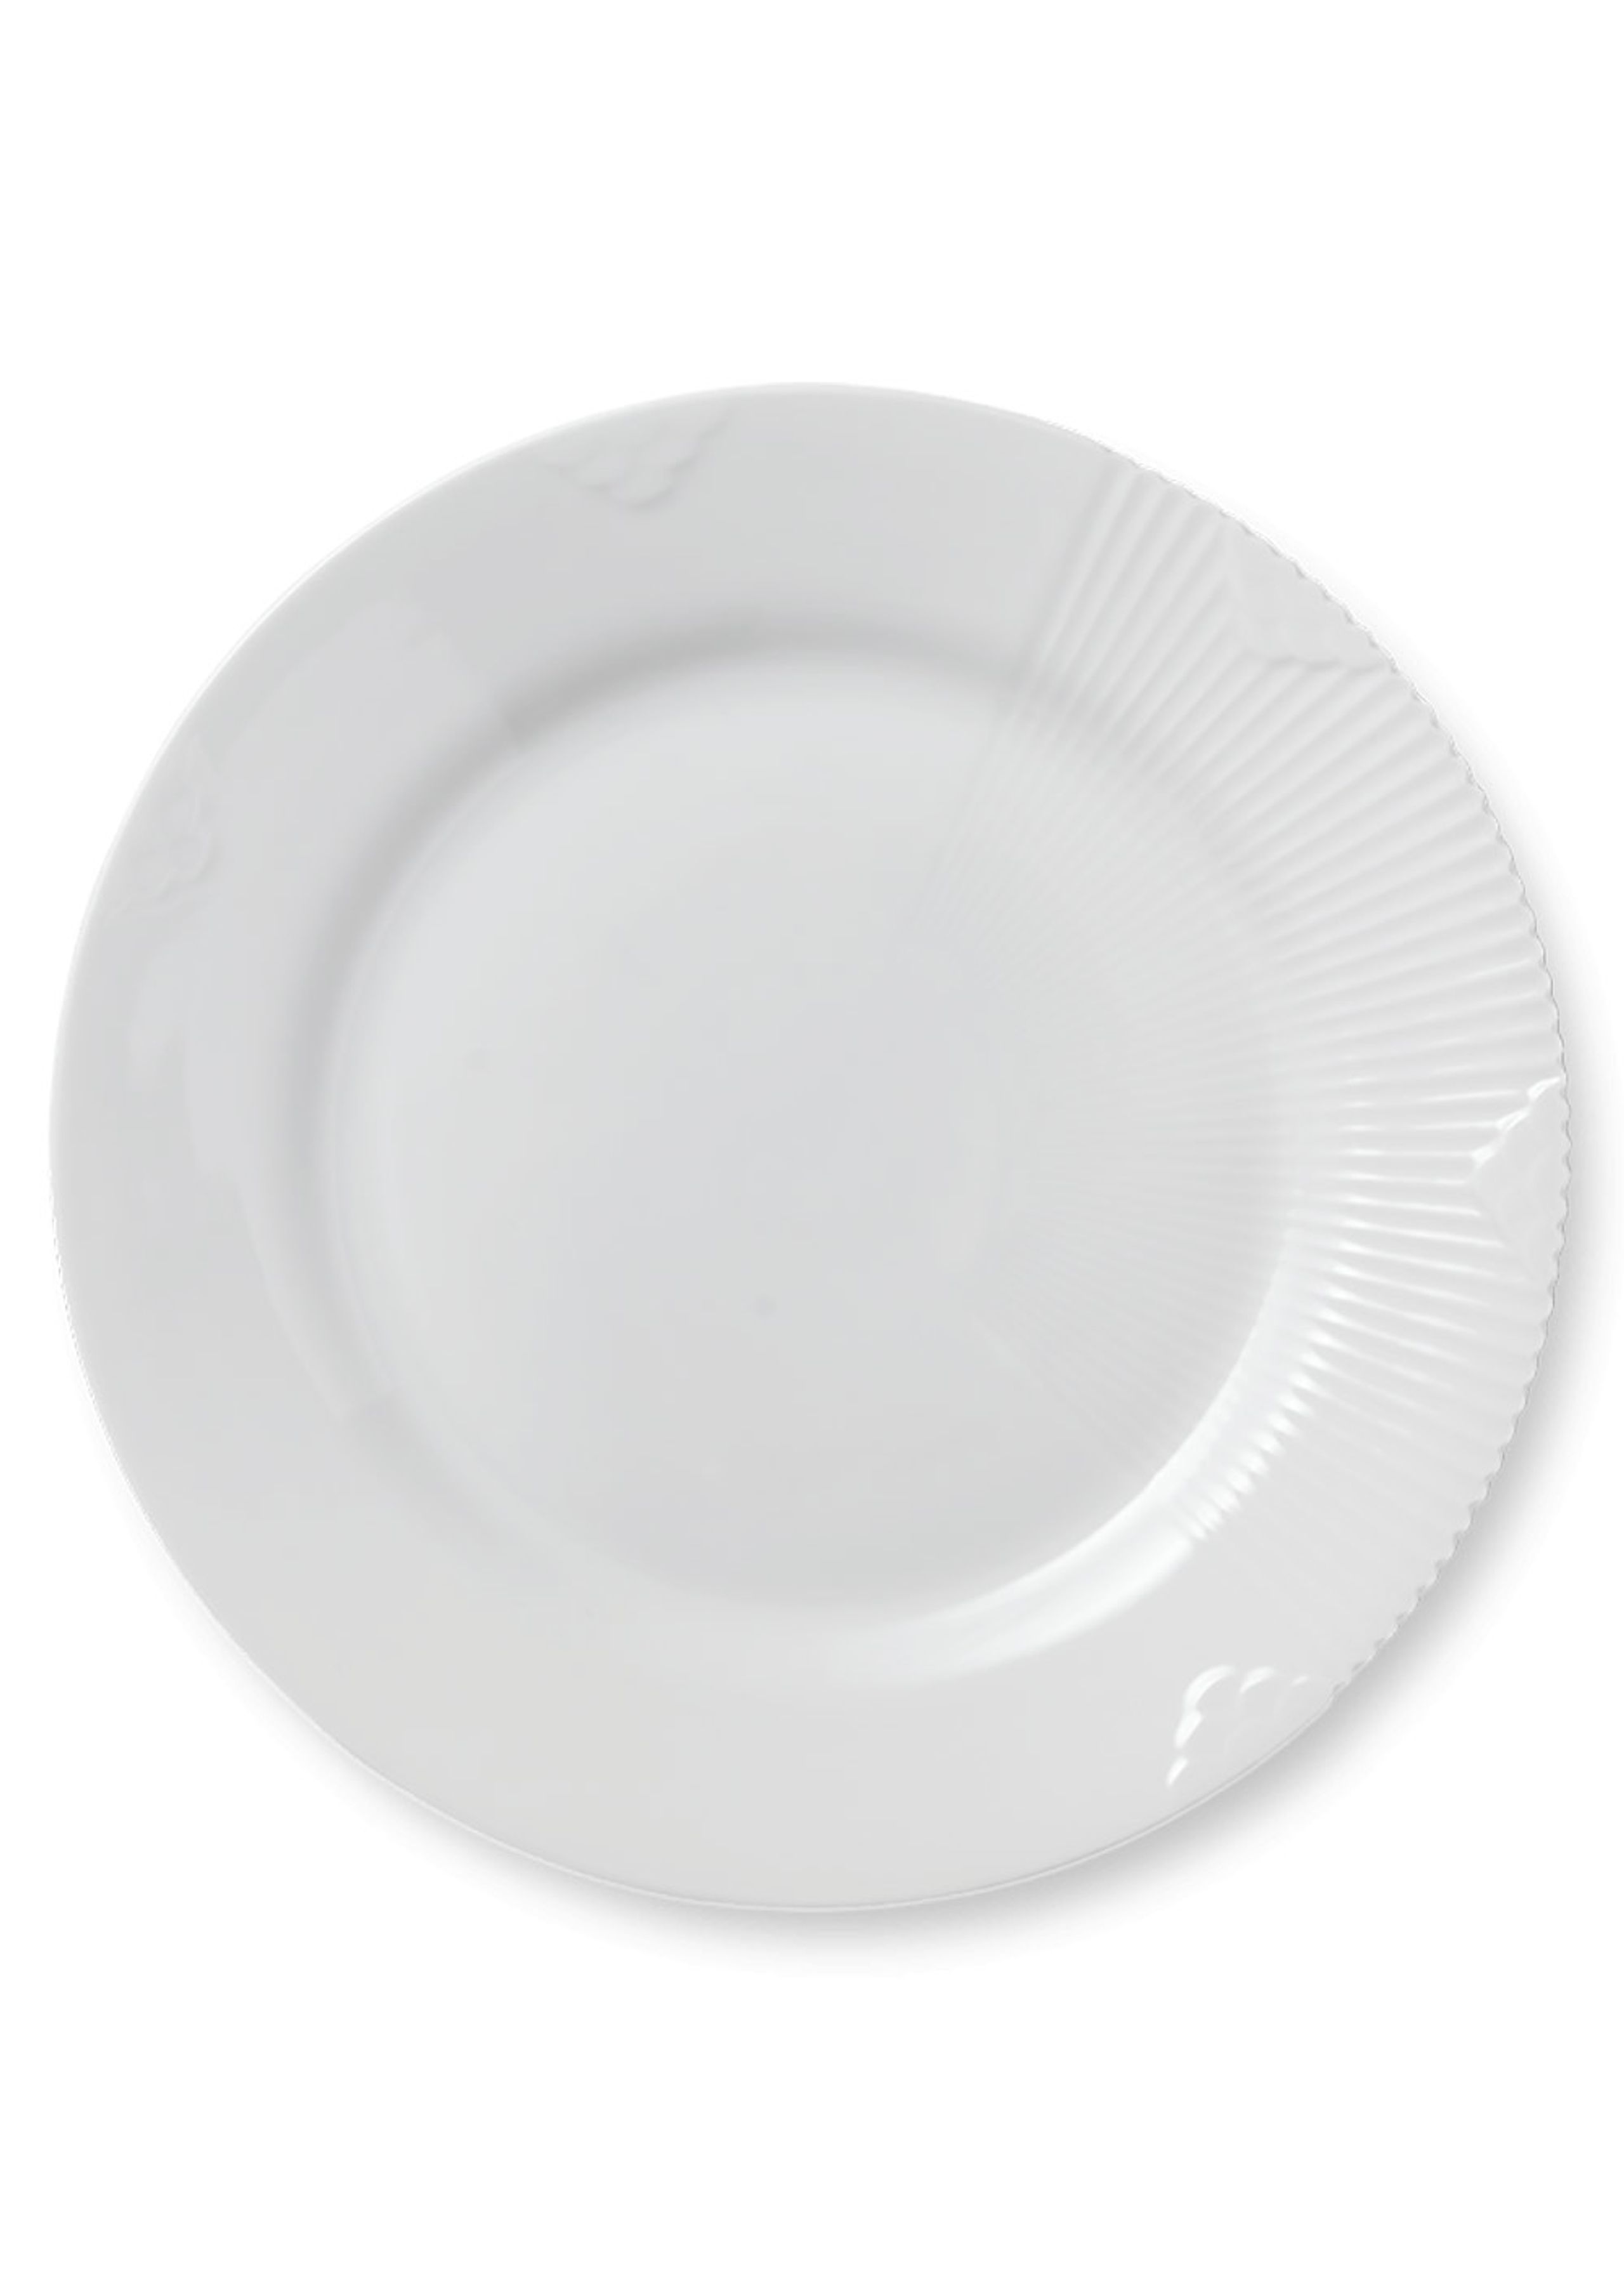 Royal Copenhagen - Plate - White Elements - Plates - Plate - 22 cm